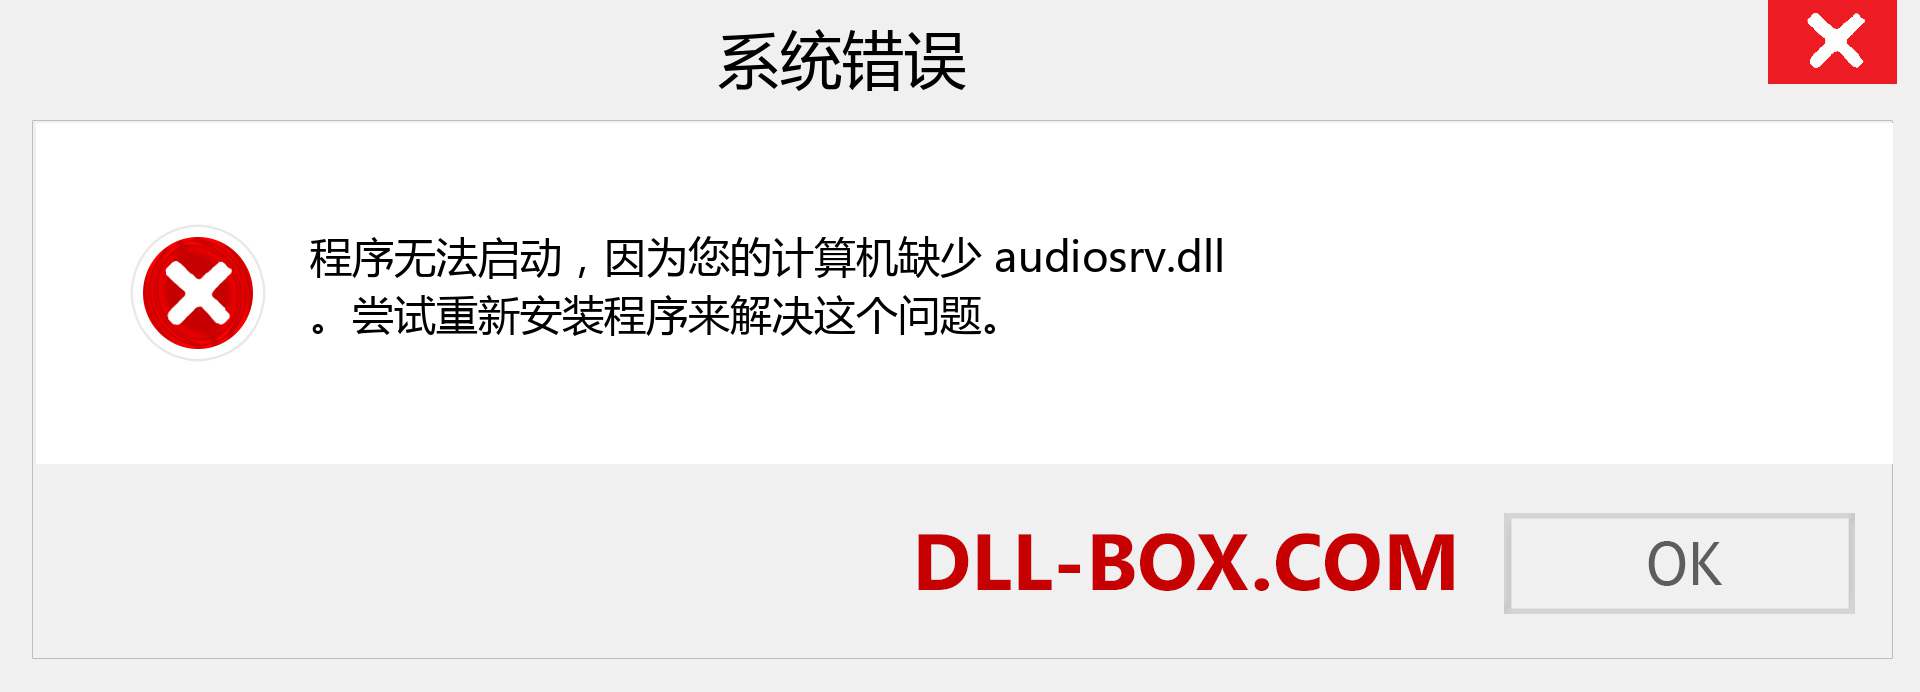 audiosrv.dll 文件丢失？。 适用于 Windows 7、8、10 的下载 - 修复 Windows、照片、图像上的 audiosrv dll 丢失错误